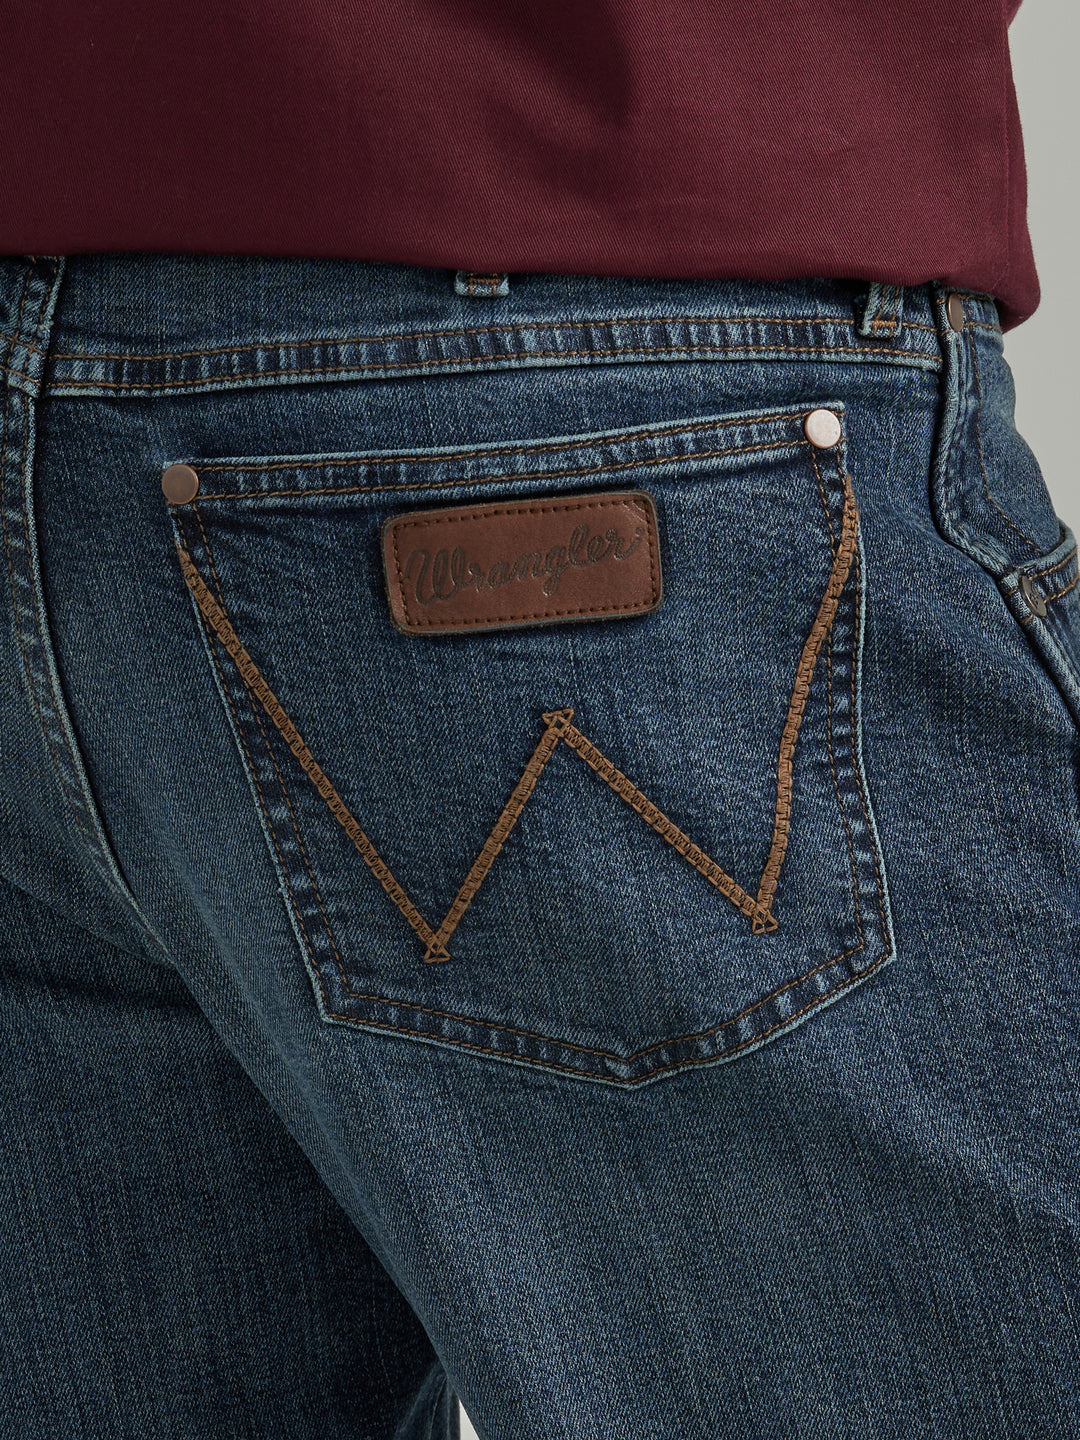 Wrangler Men's Retro Relaxed Bootcut Jean